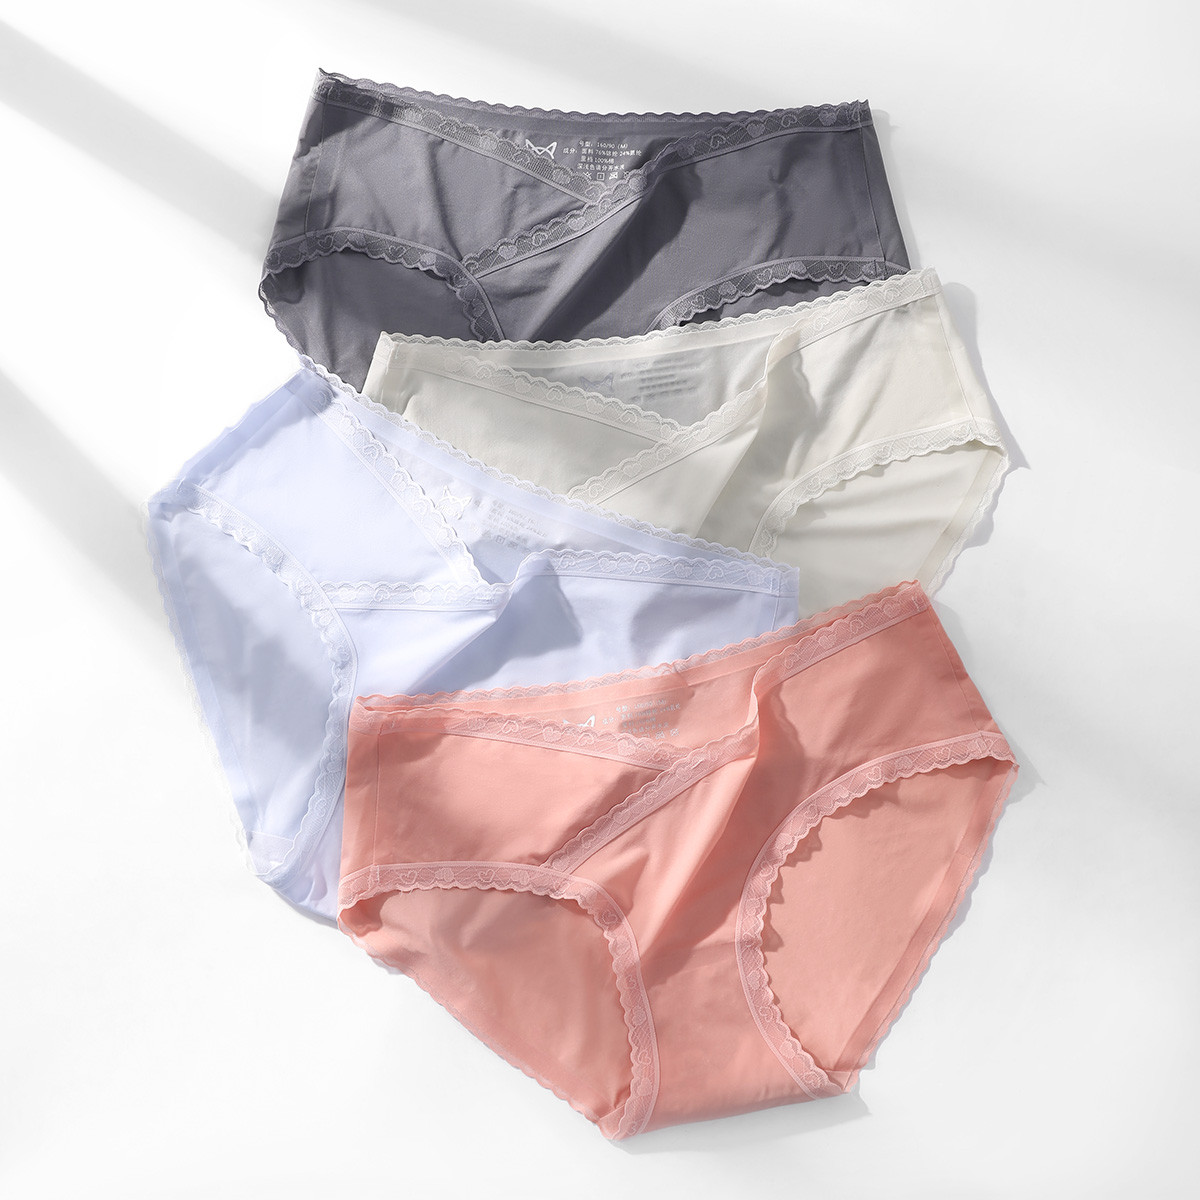 【抑菌透气】4双装蕾丝超薄透气内裤女性感纯棉抑菌裆女士内裤